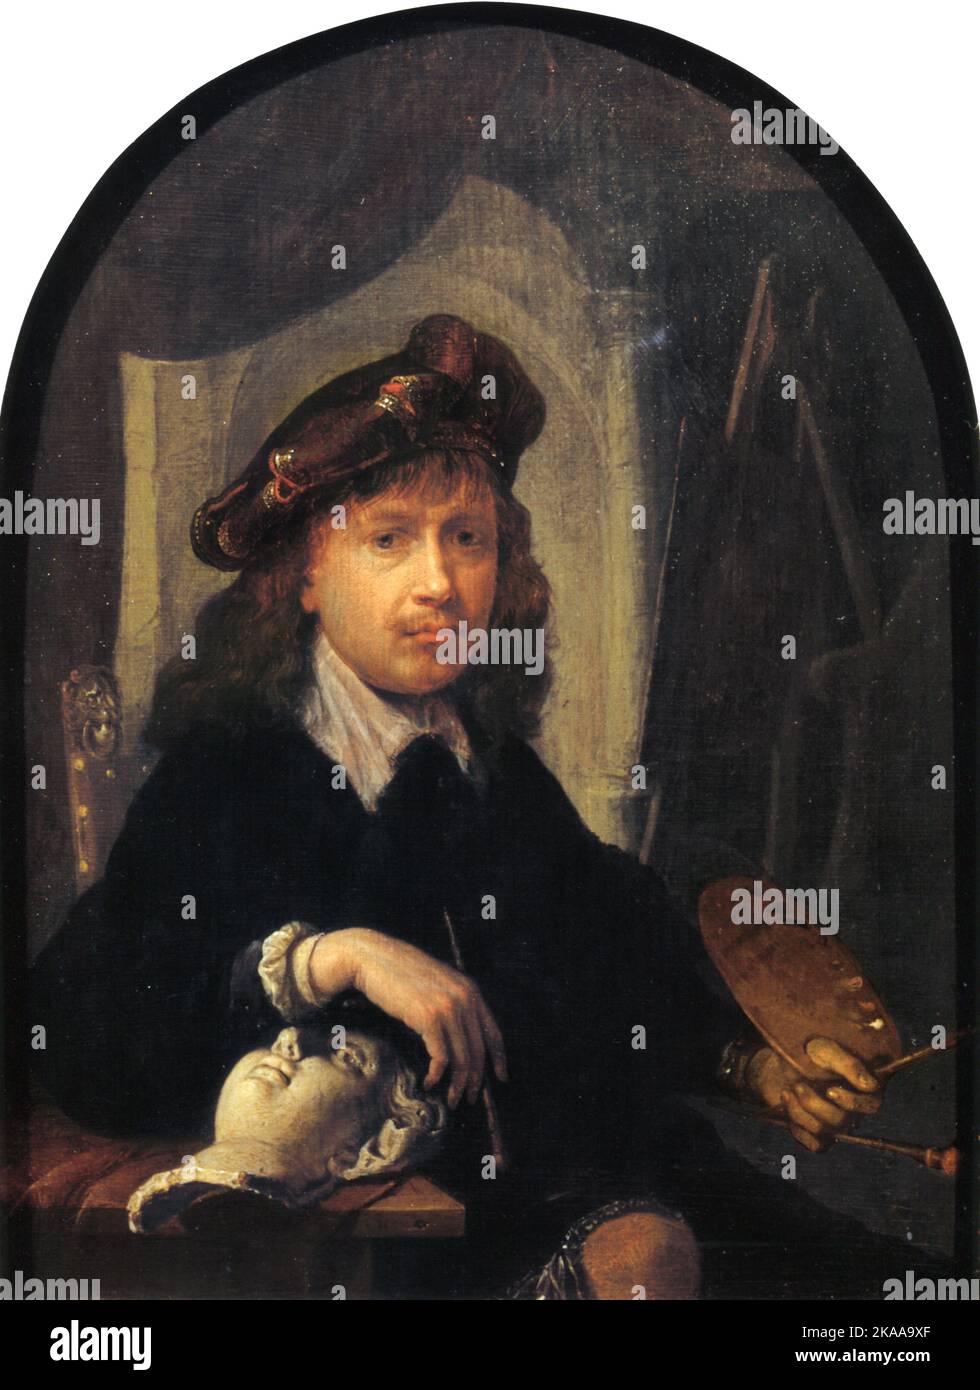 Gerrit Dou, Autoritratto, circa 1635–1638, Gerrit Dou (1613–1675), conosciuto come Gerard Douw o Dow, pittore olandese dell'età dell'oro, Foto Stock